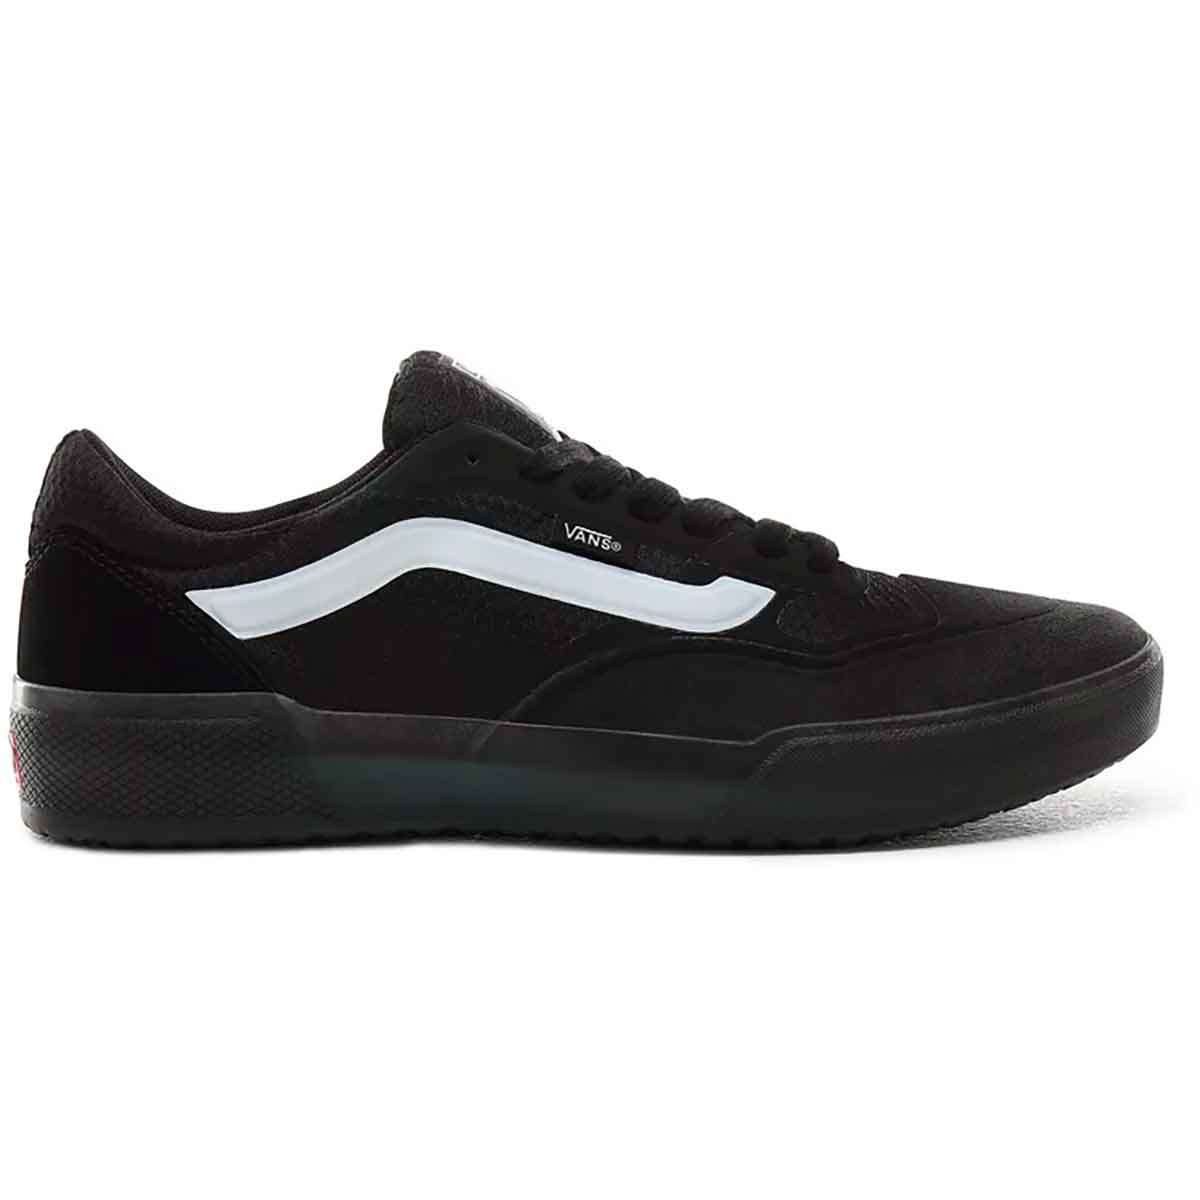 Vans AVE Pro Skate Shoes - Black/White 